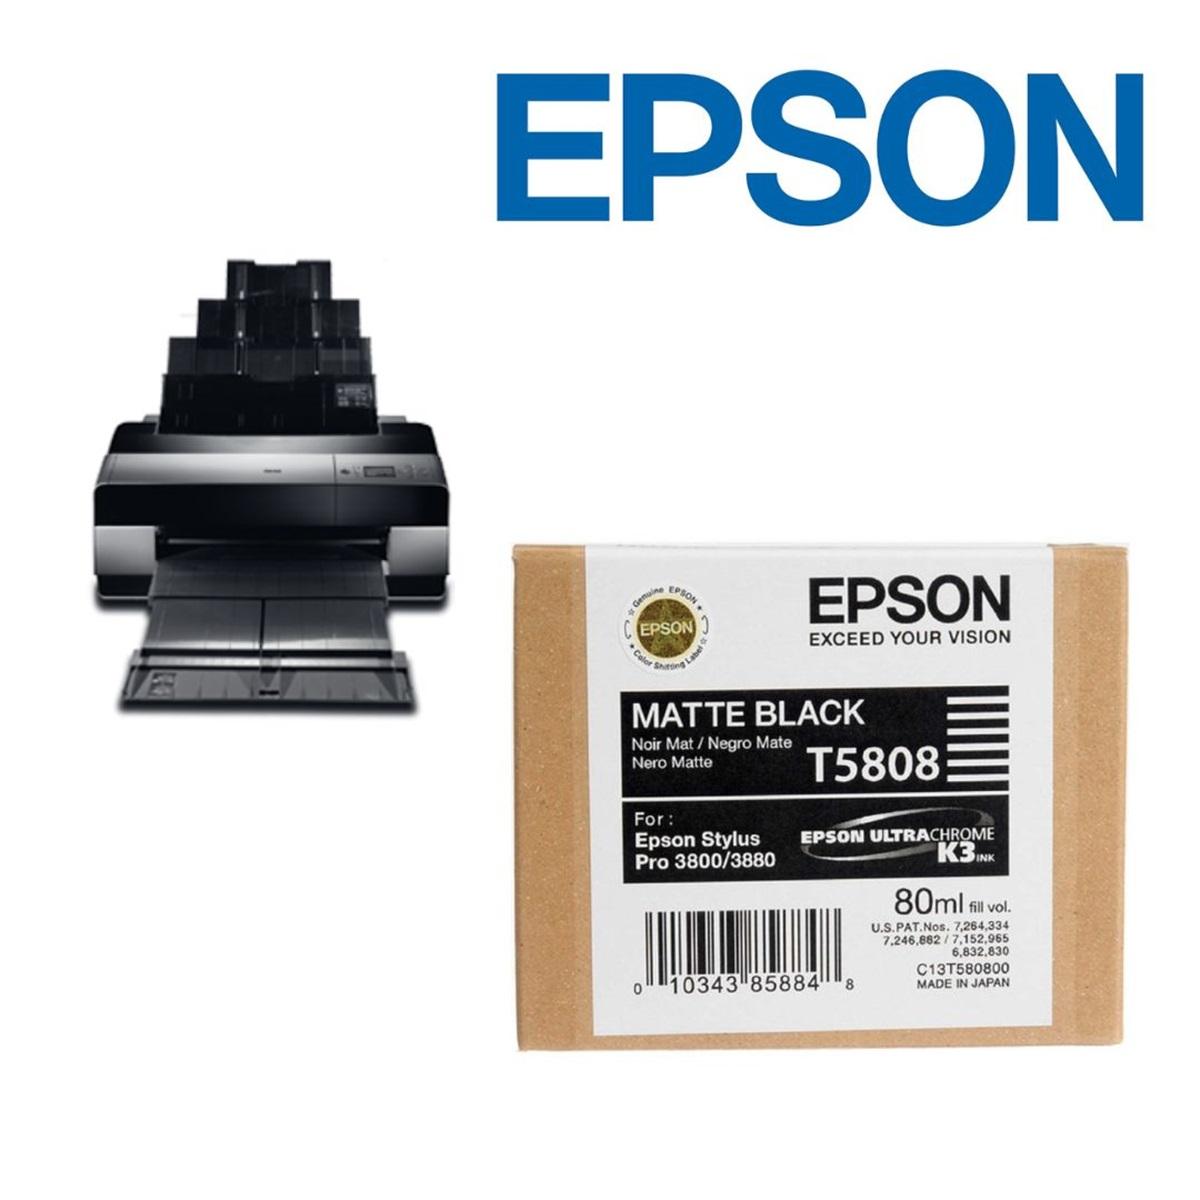 Epson UltraChrome K3, T580, 80ml Inks